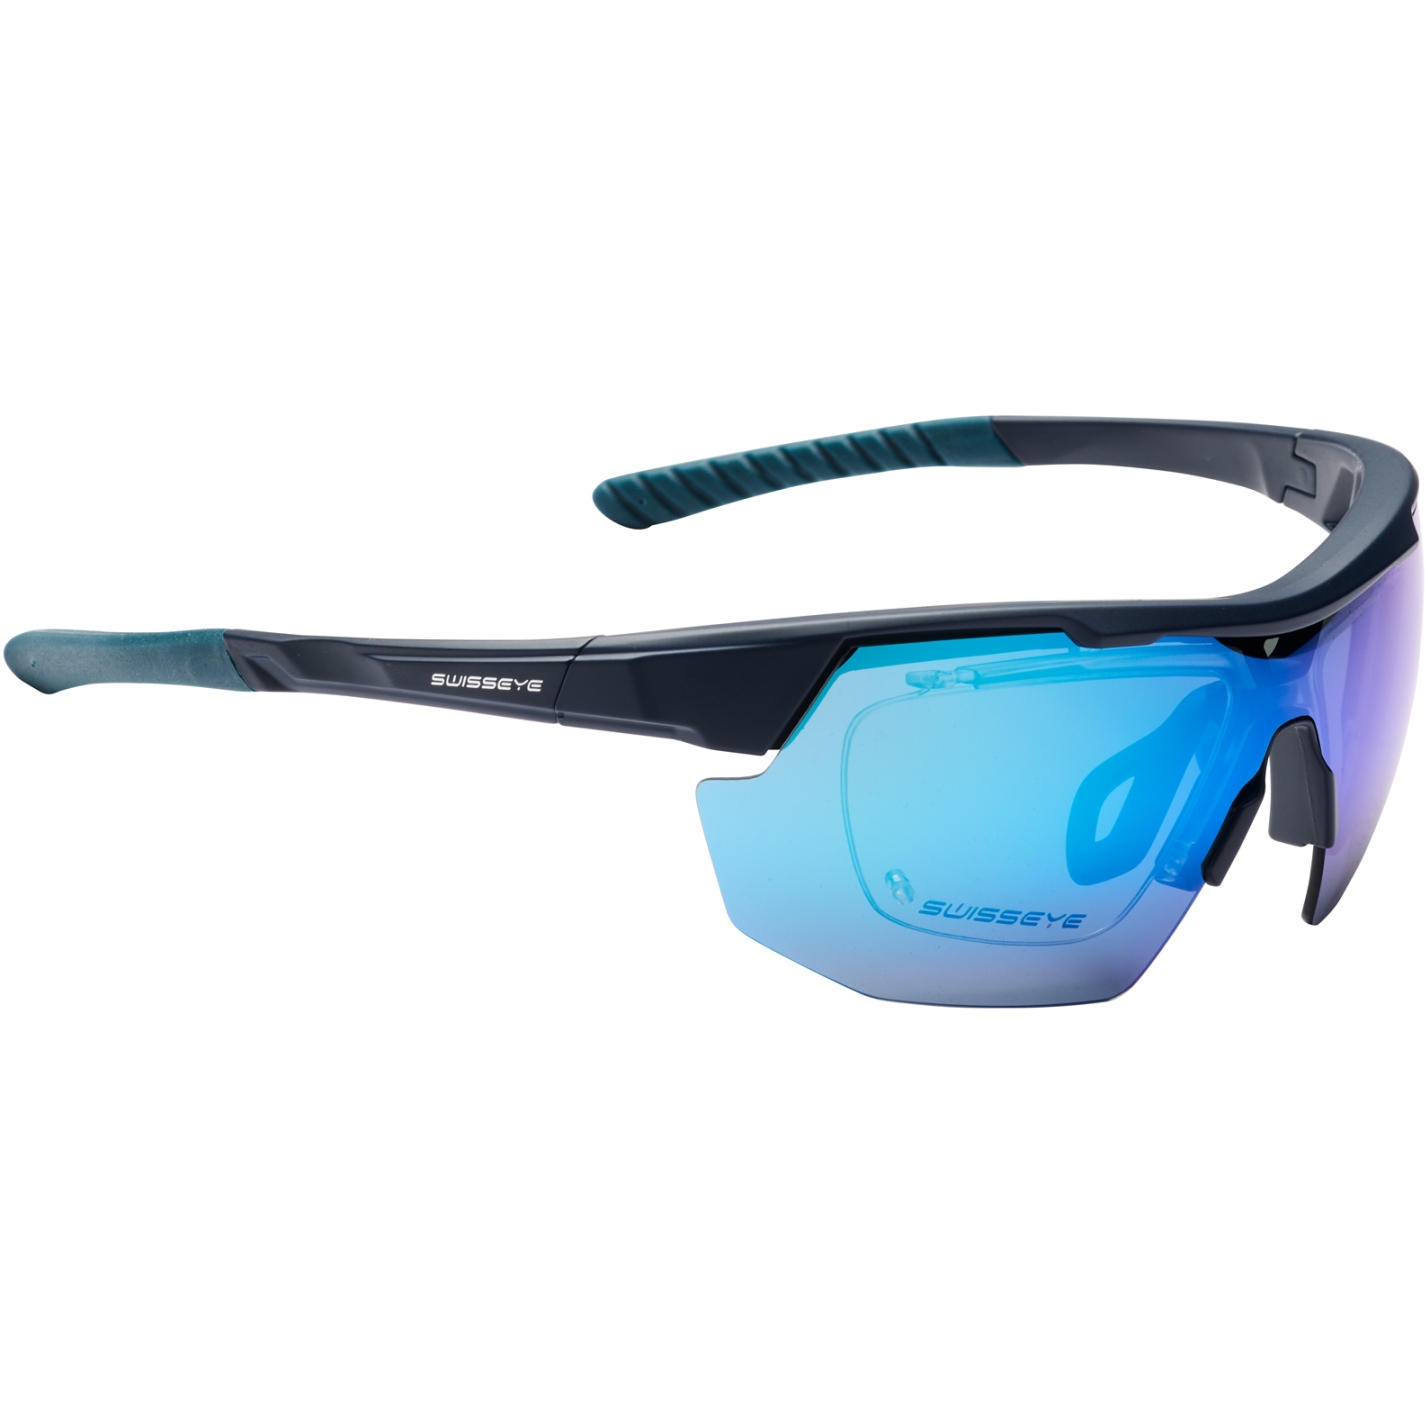 Produktbild von Swiss Eye Speedway Brille - Dark Blue Matt / Blue - Smoke BW Revo + Orange + Clear 12342